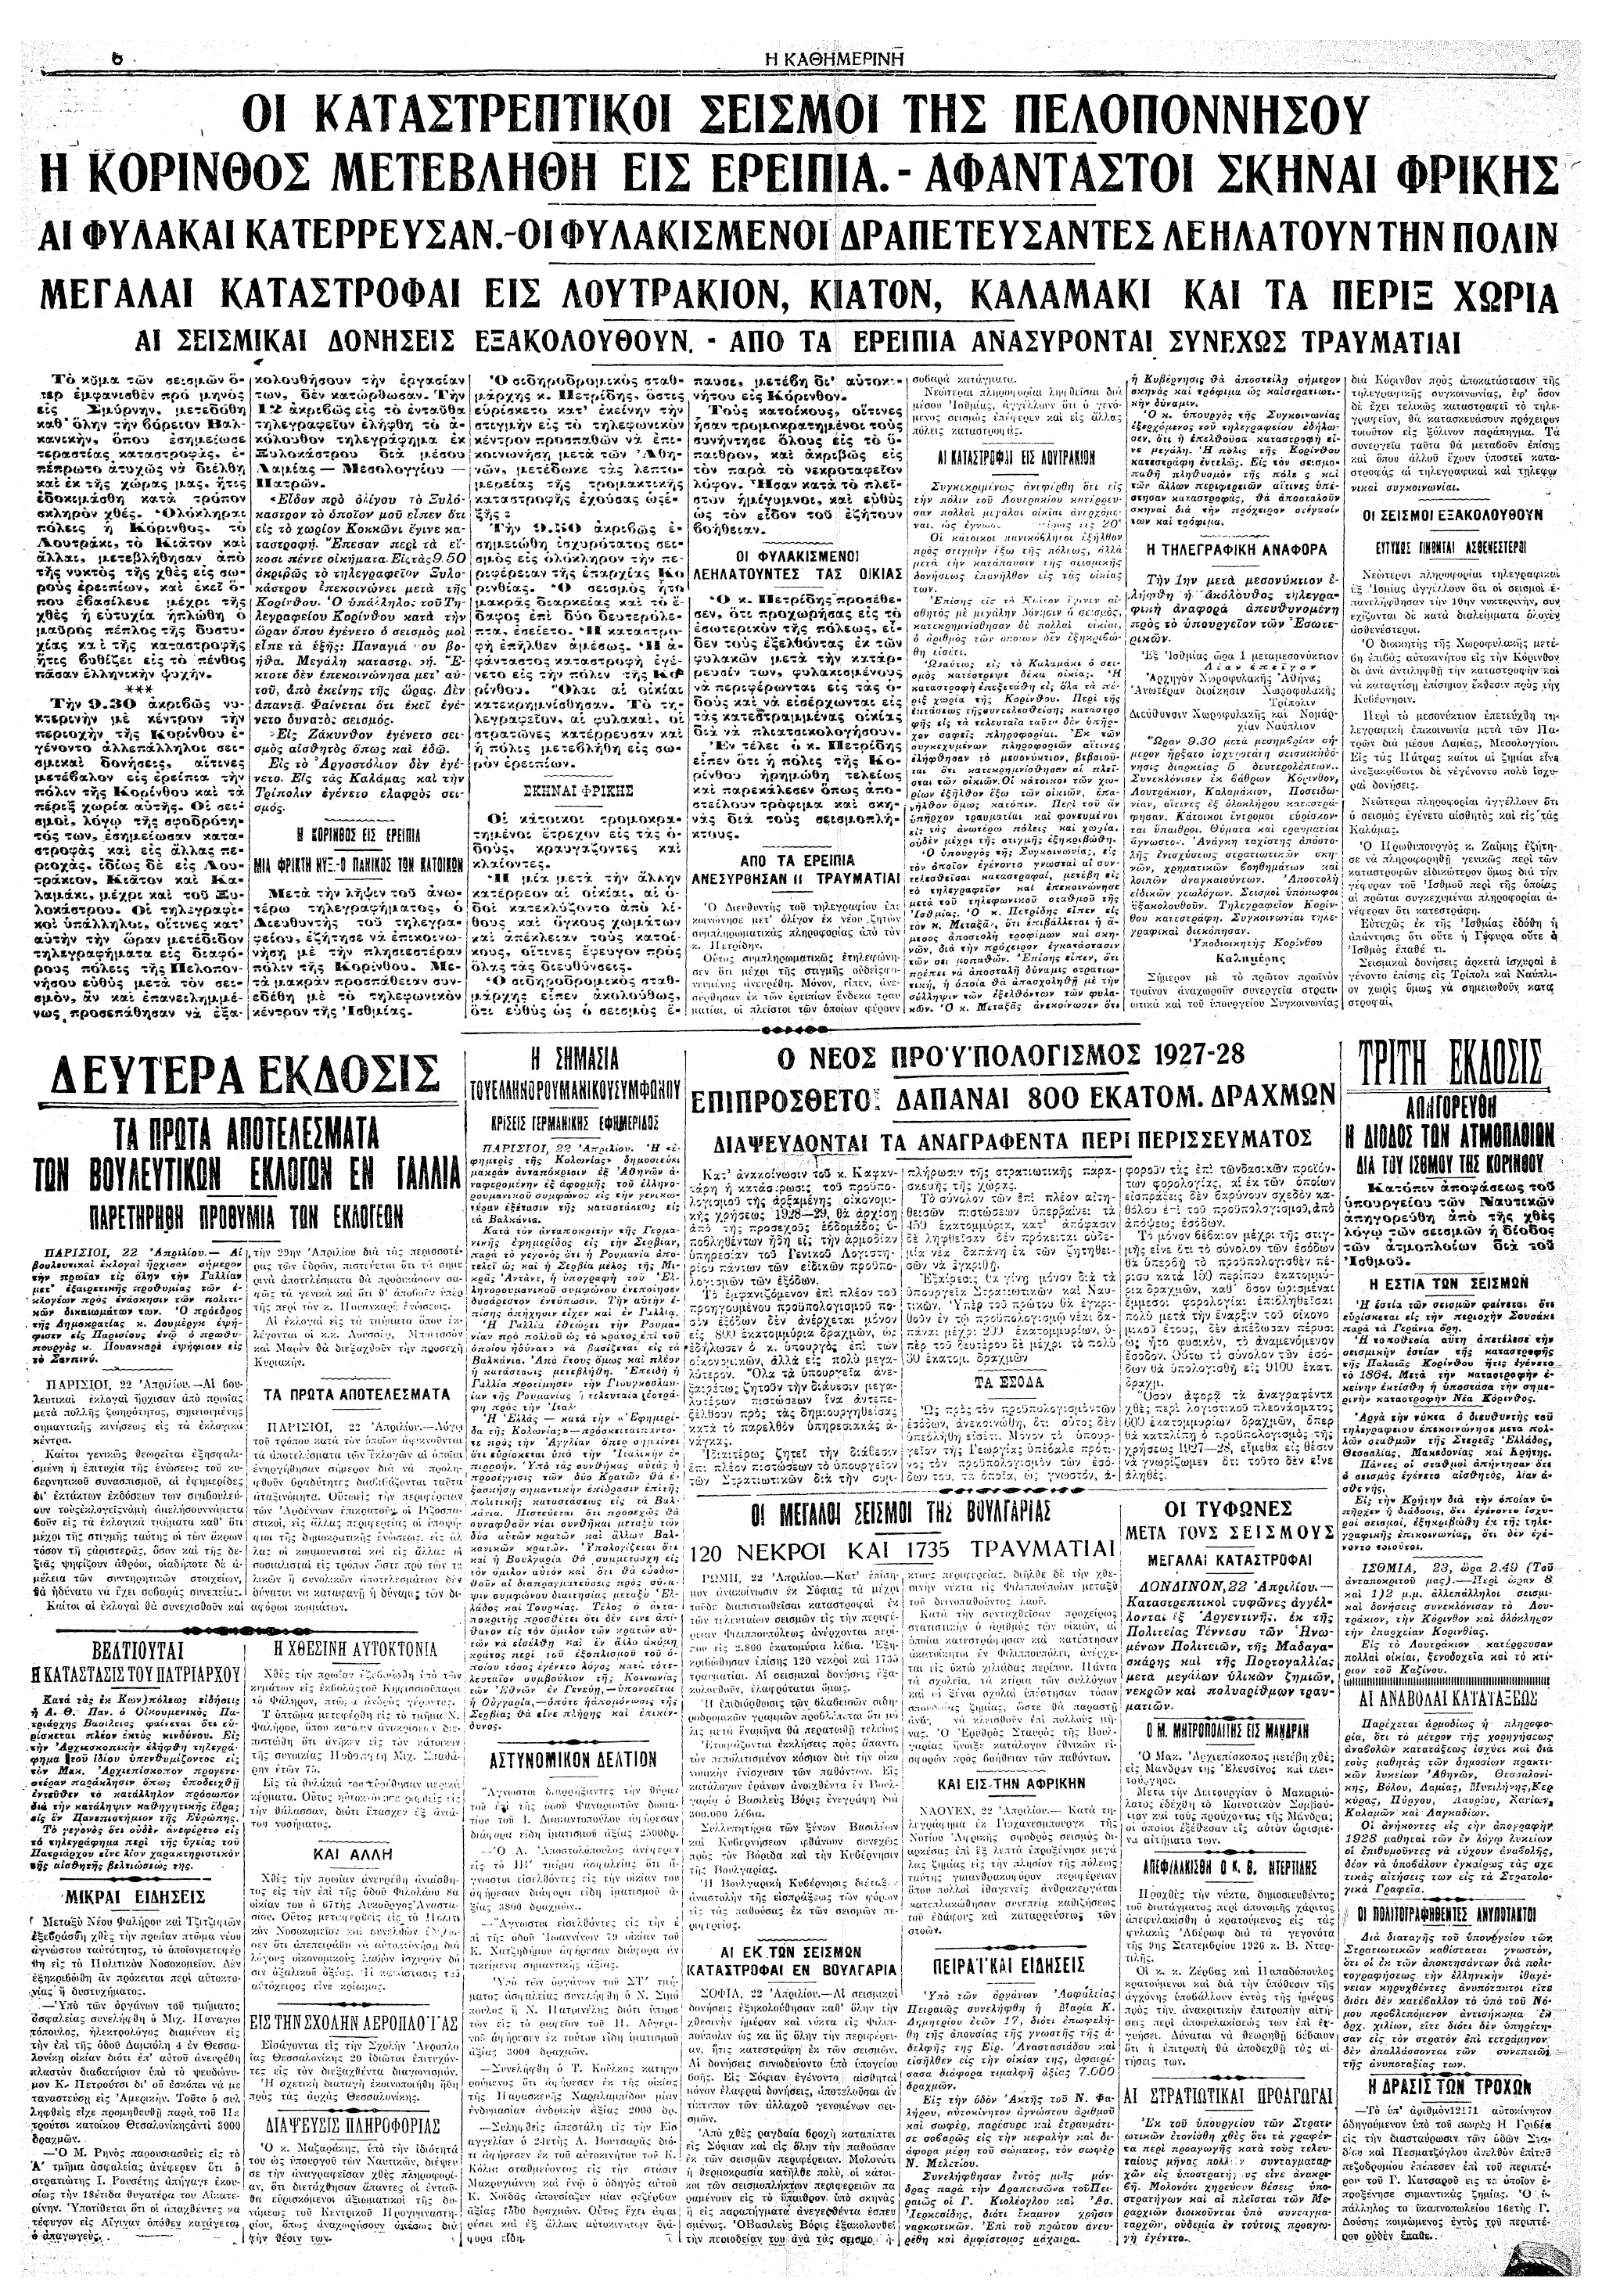 Σαν σήμερα: 22 Απριλίου 1928 – Ο μεγάλος σεισμός της Κορίνθου-2